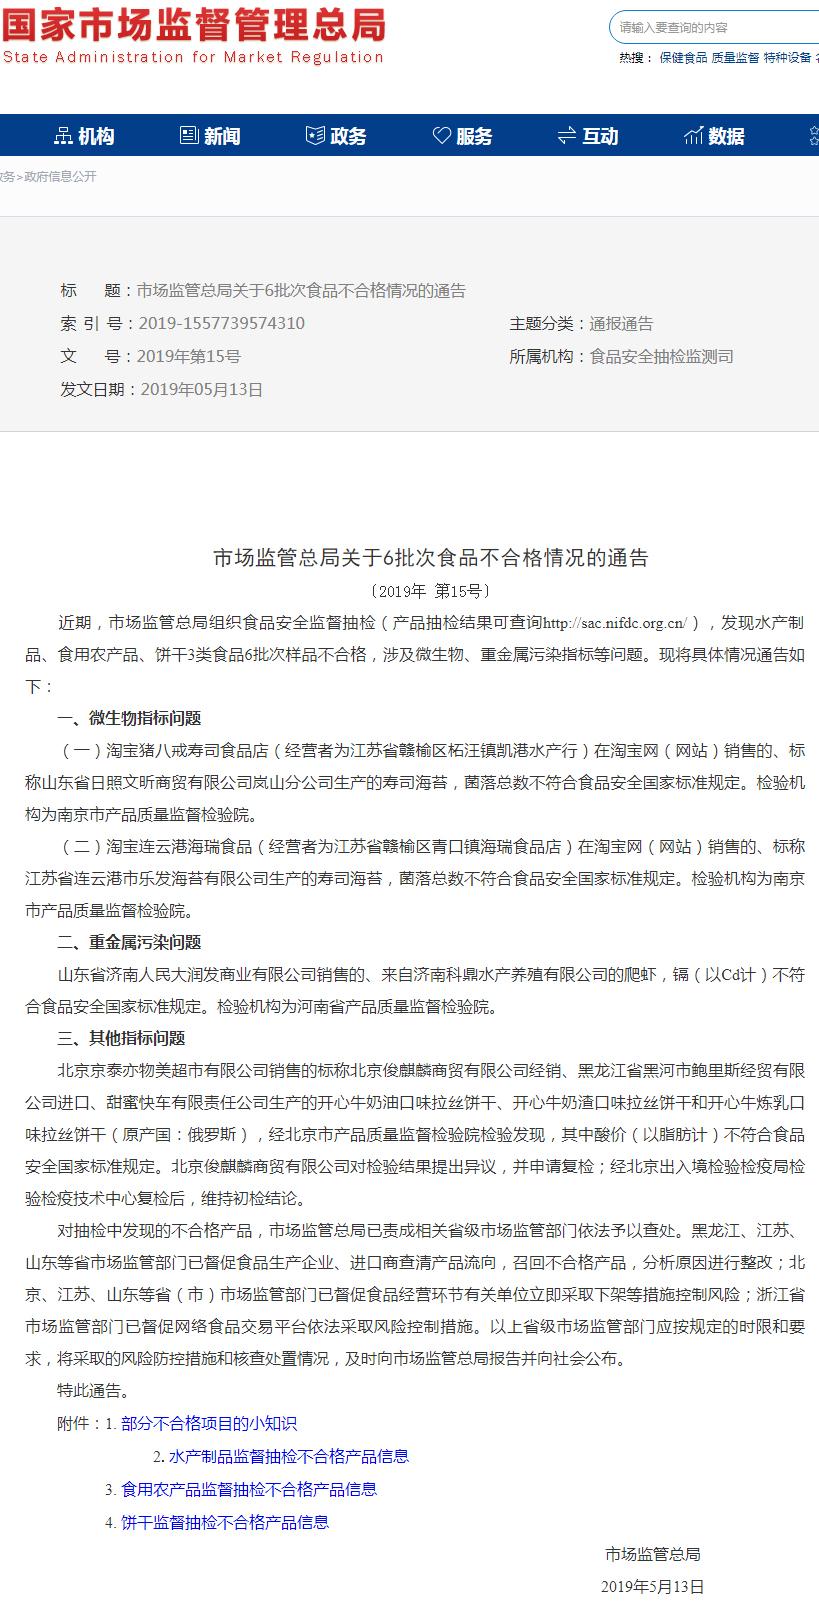 江苏连云港市乐发海苔有限公司生产的寿司海苔菌落总数不合格